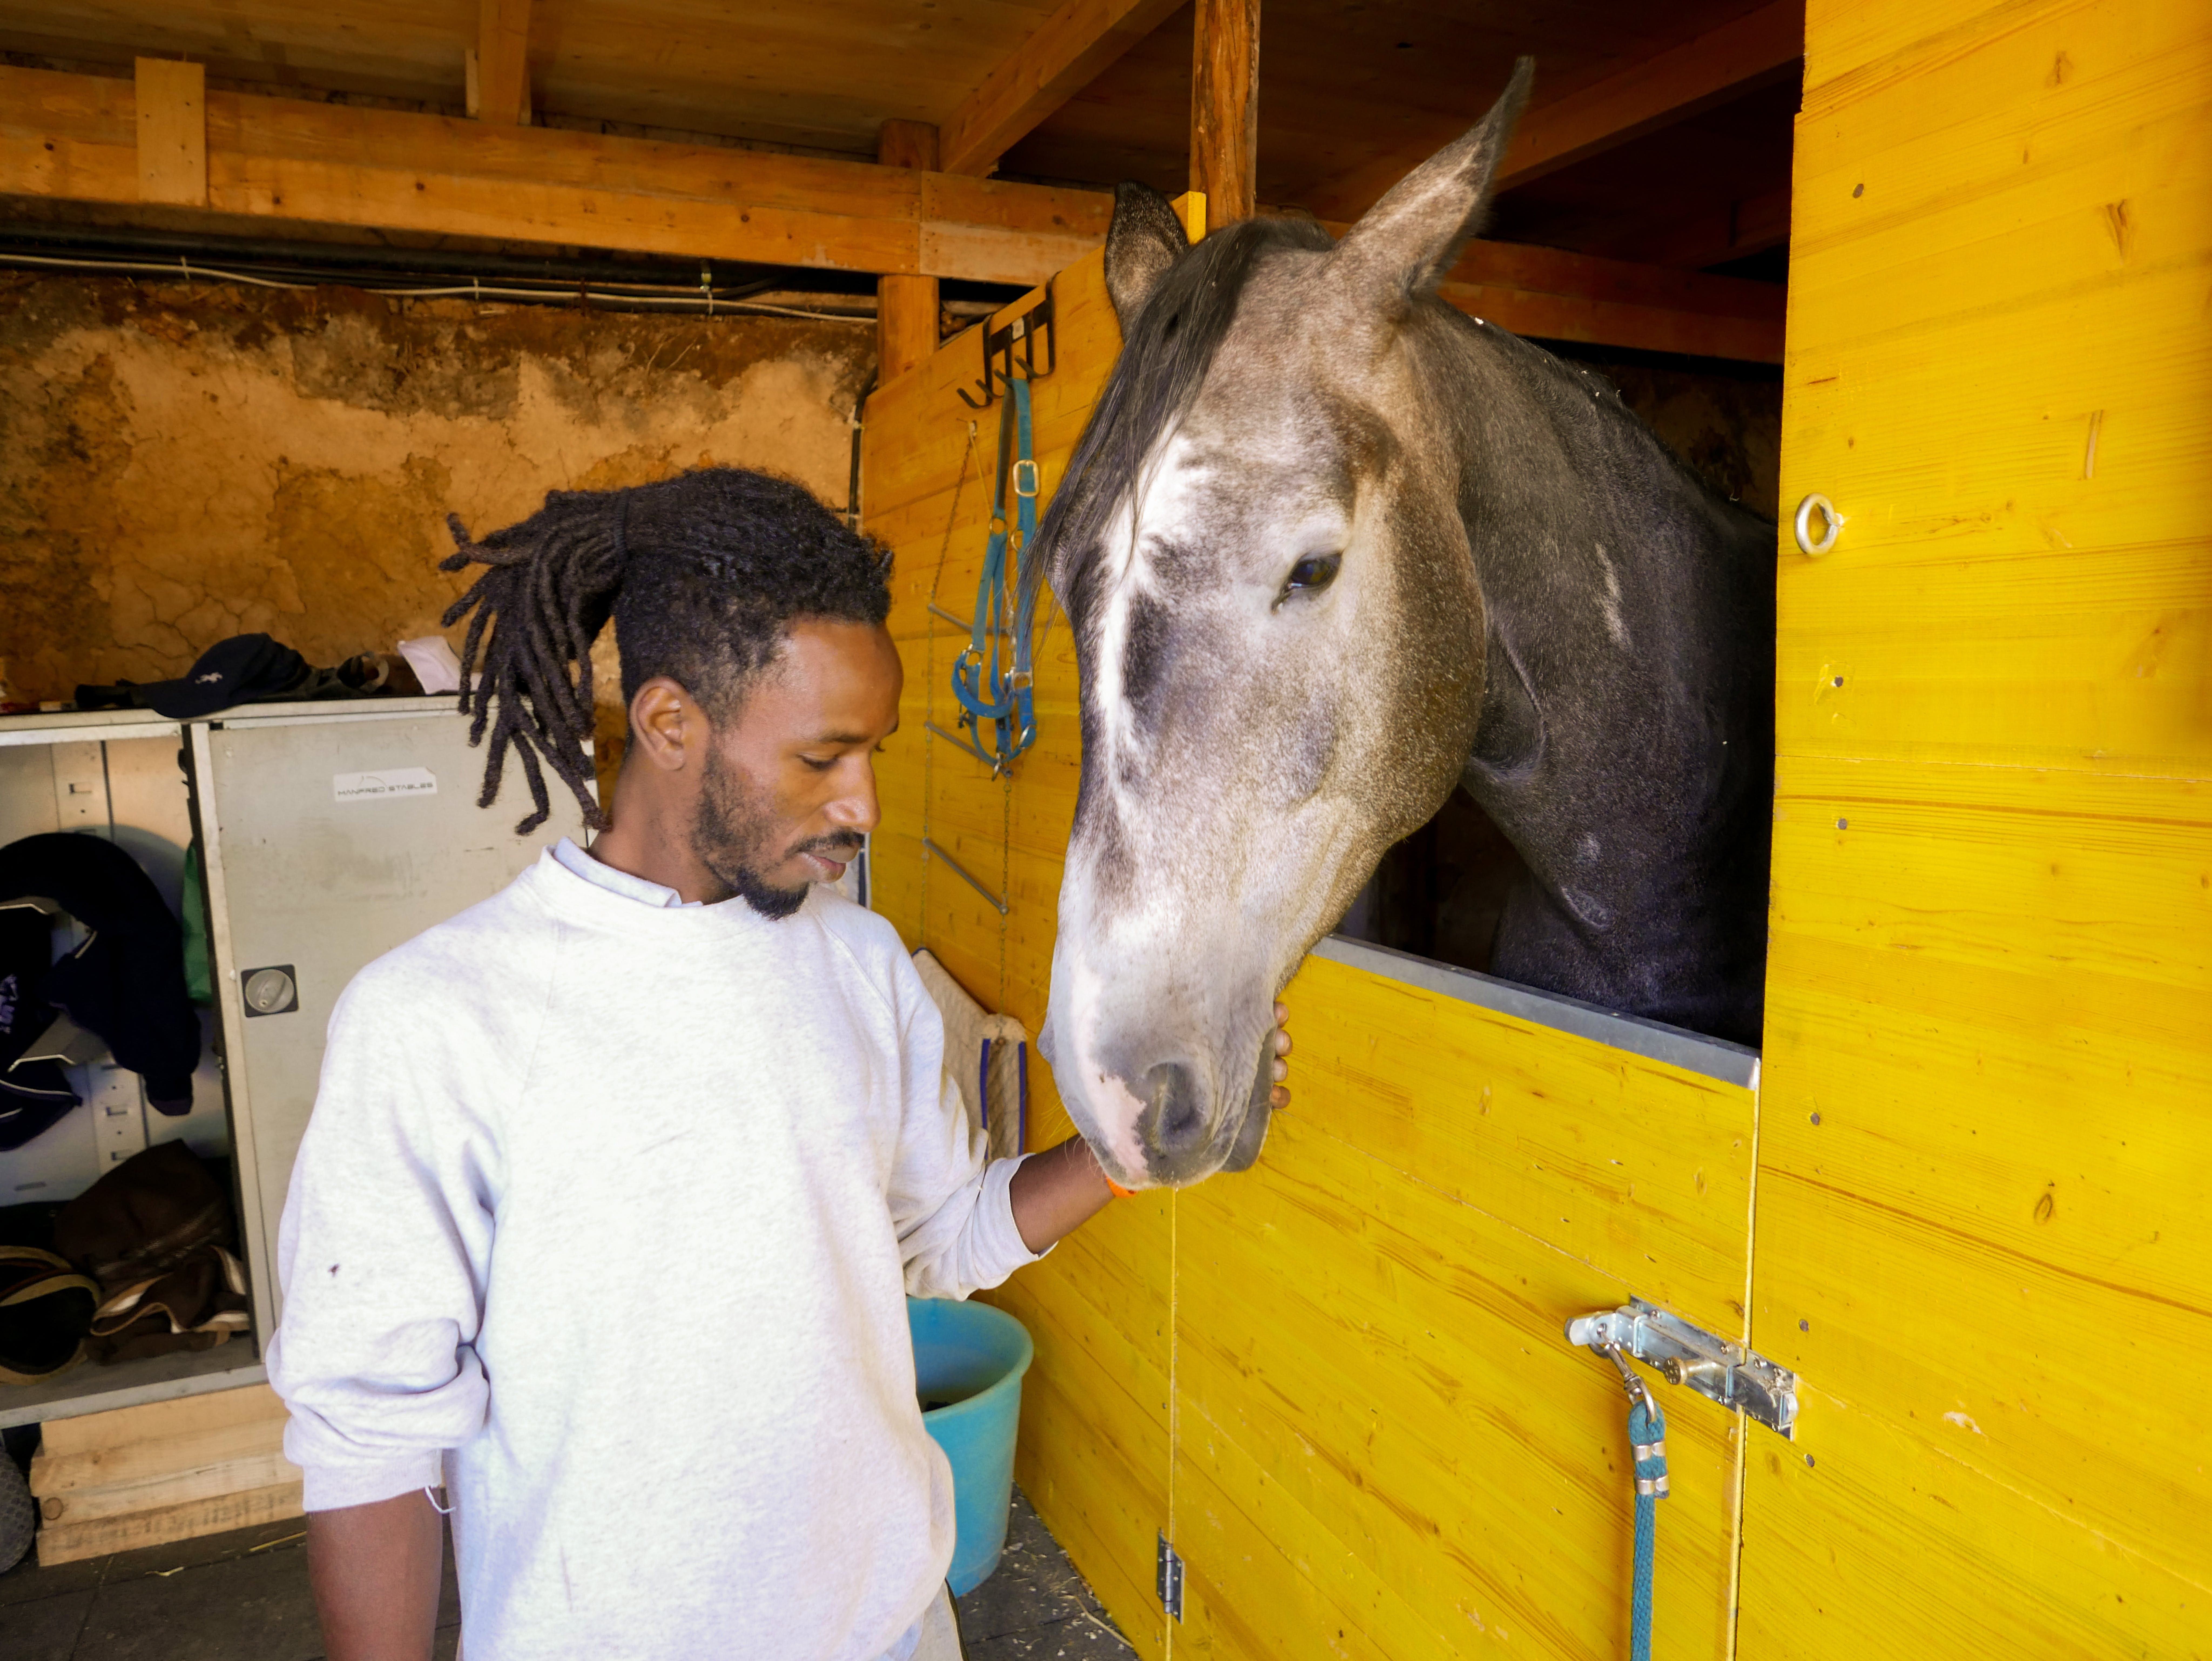 Modou, giovane rifugiato del Gambia, sorride accarezzando uno dei cavalli del maneggio